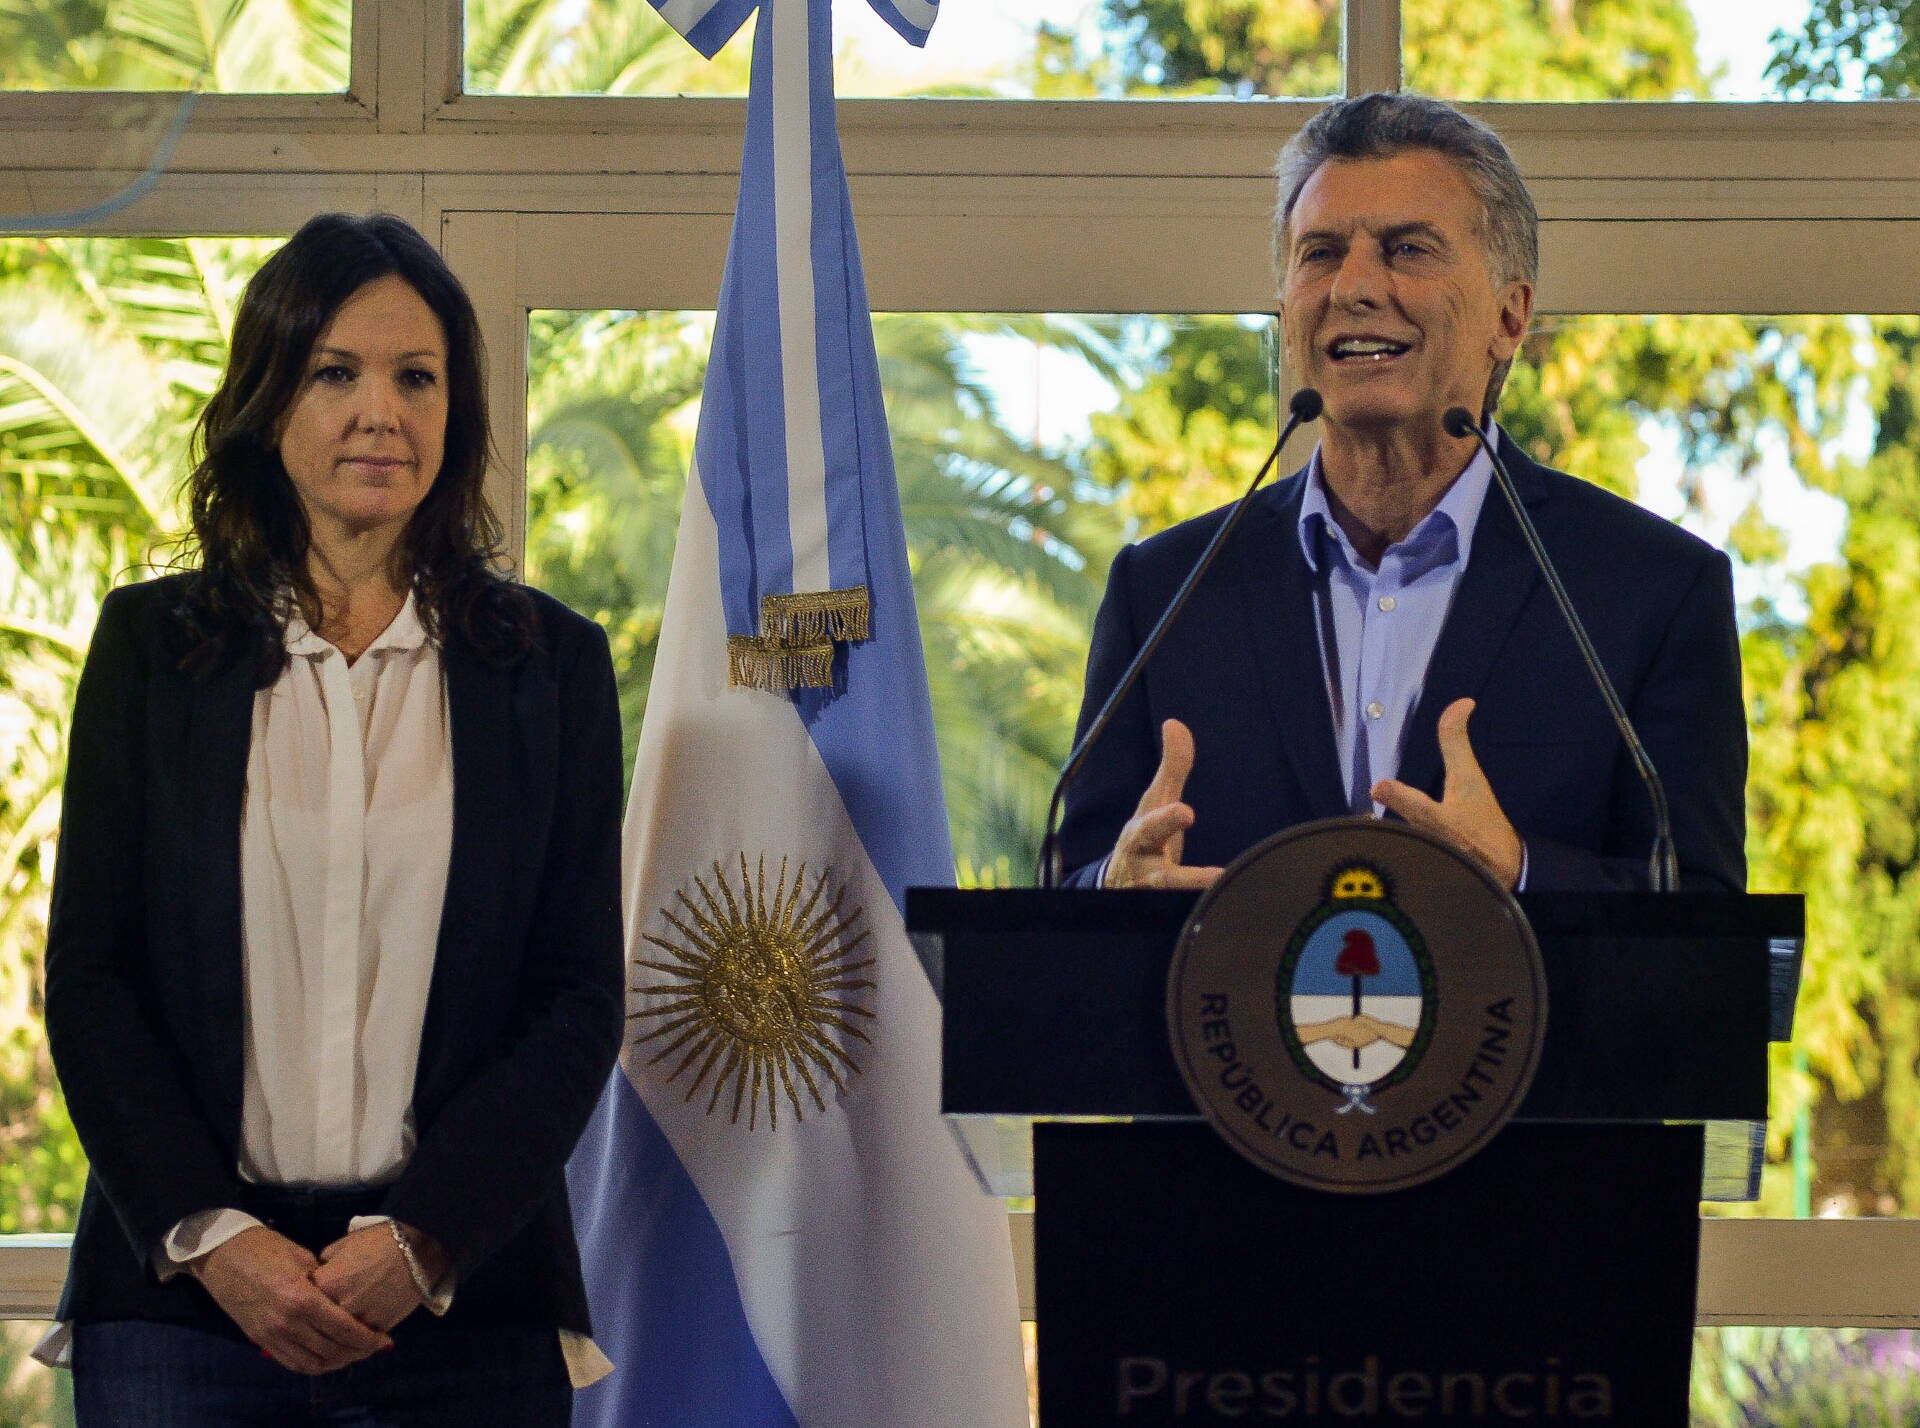 El presidente Macri: Estamos en el buen camino